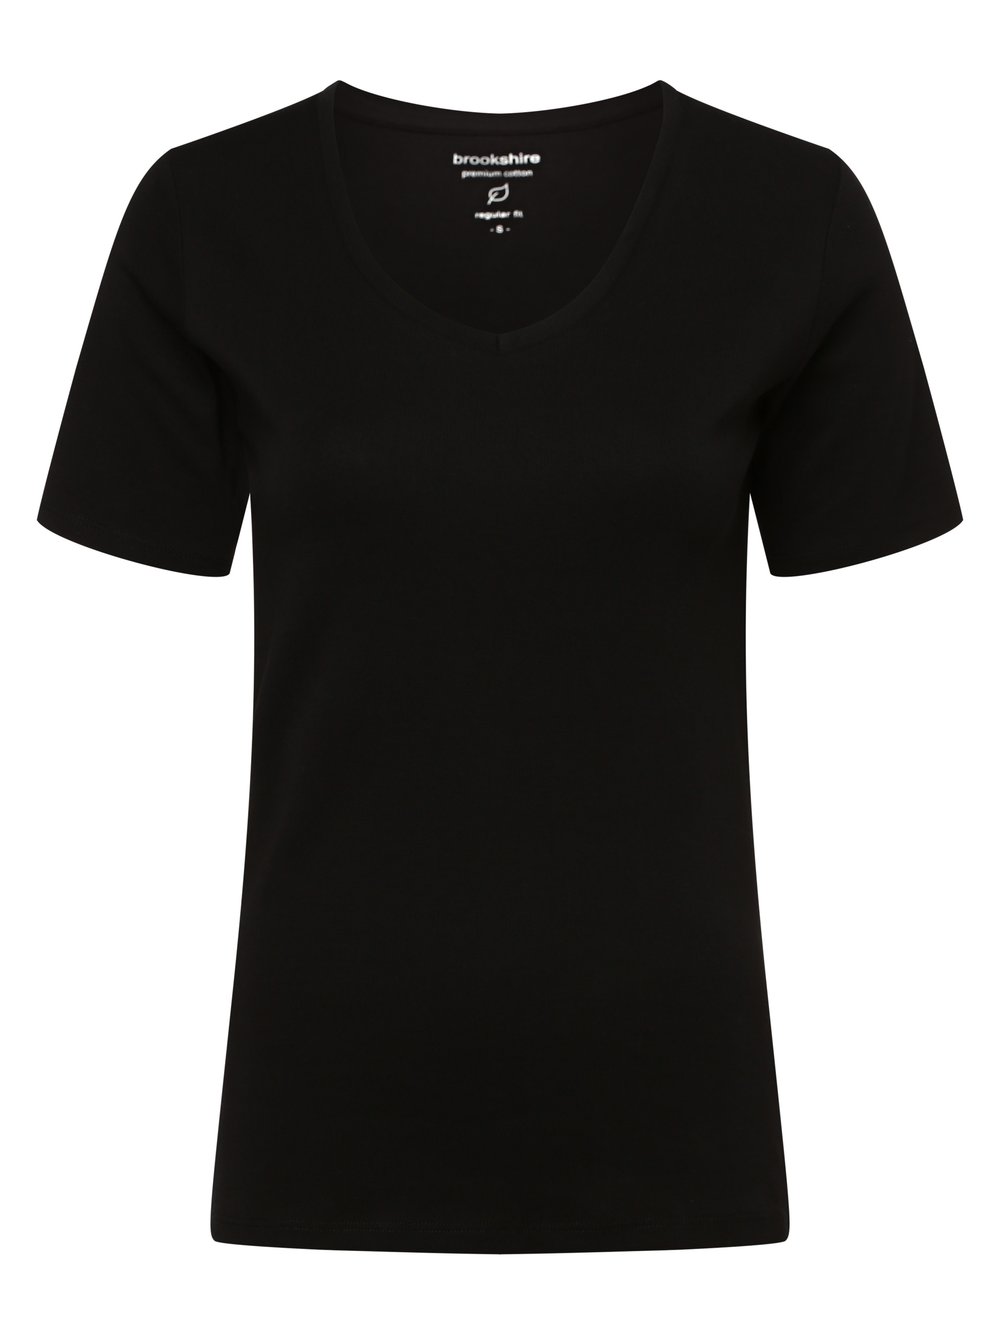 brookshire T-shirt damski Kobiety Bawełna czarny jednolity, S